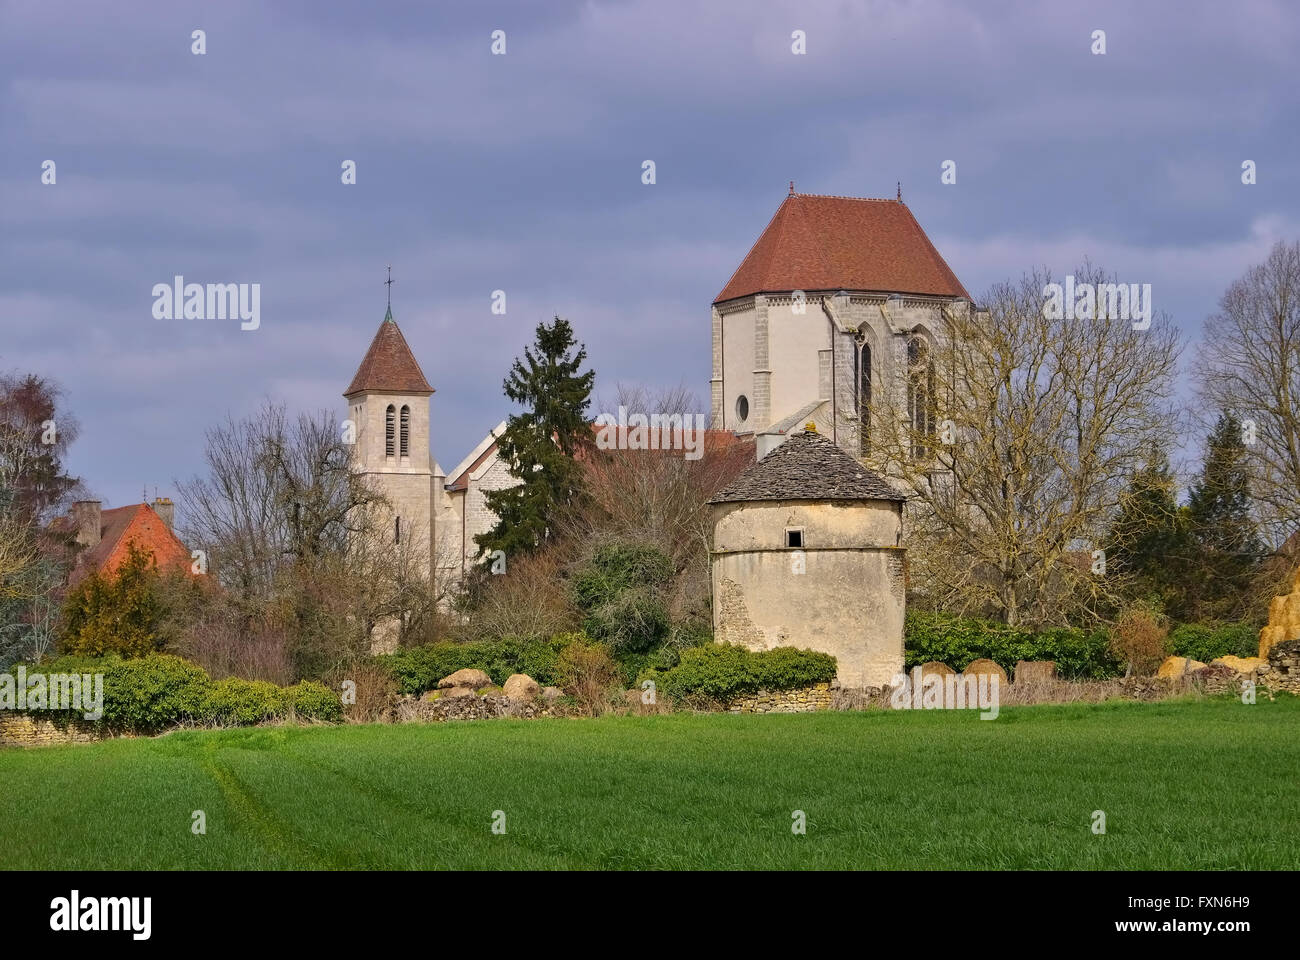 Romanische Kirche in Saint Thibault Burgund, Frankreich - romanica Saint Thibault chiesa in Borgogna, Francia Foto Stock